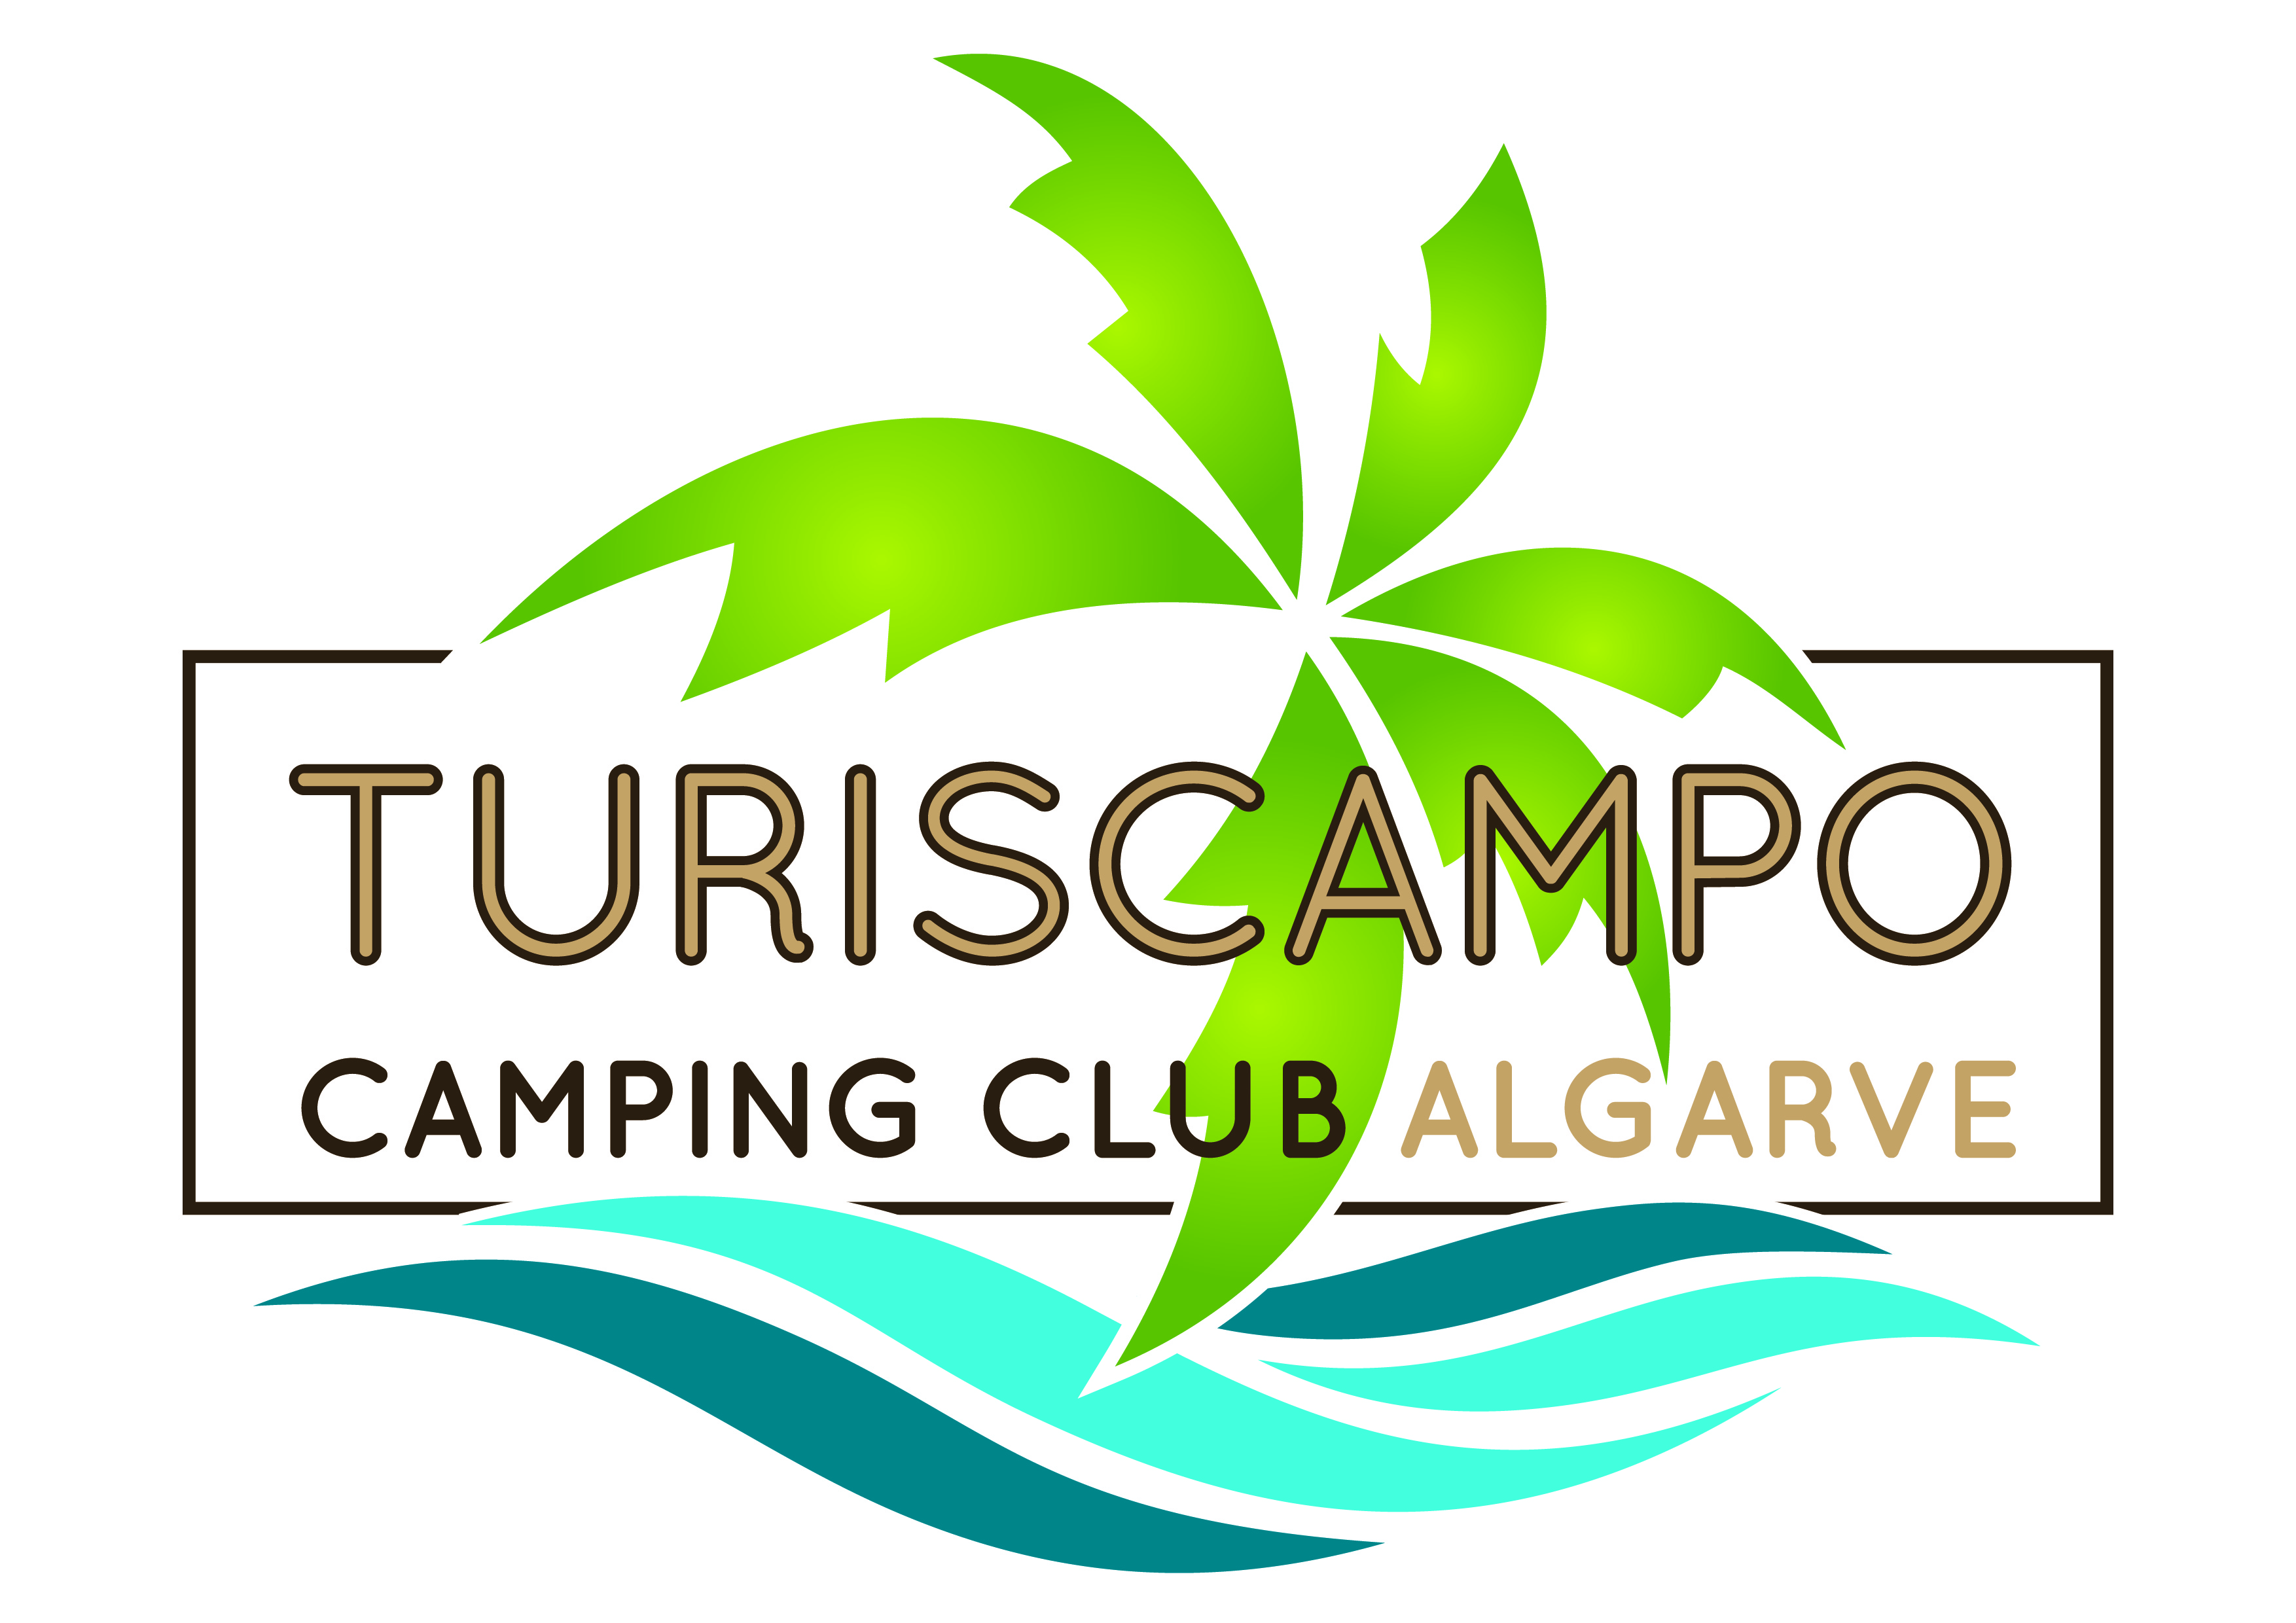 Portal de denúncias da Turiscampo - Sociedade de Empreendimentos Turisticos Parques do Algarve, Lda. - Portal de denúncias